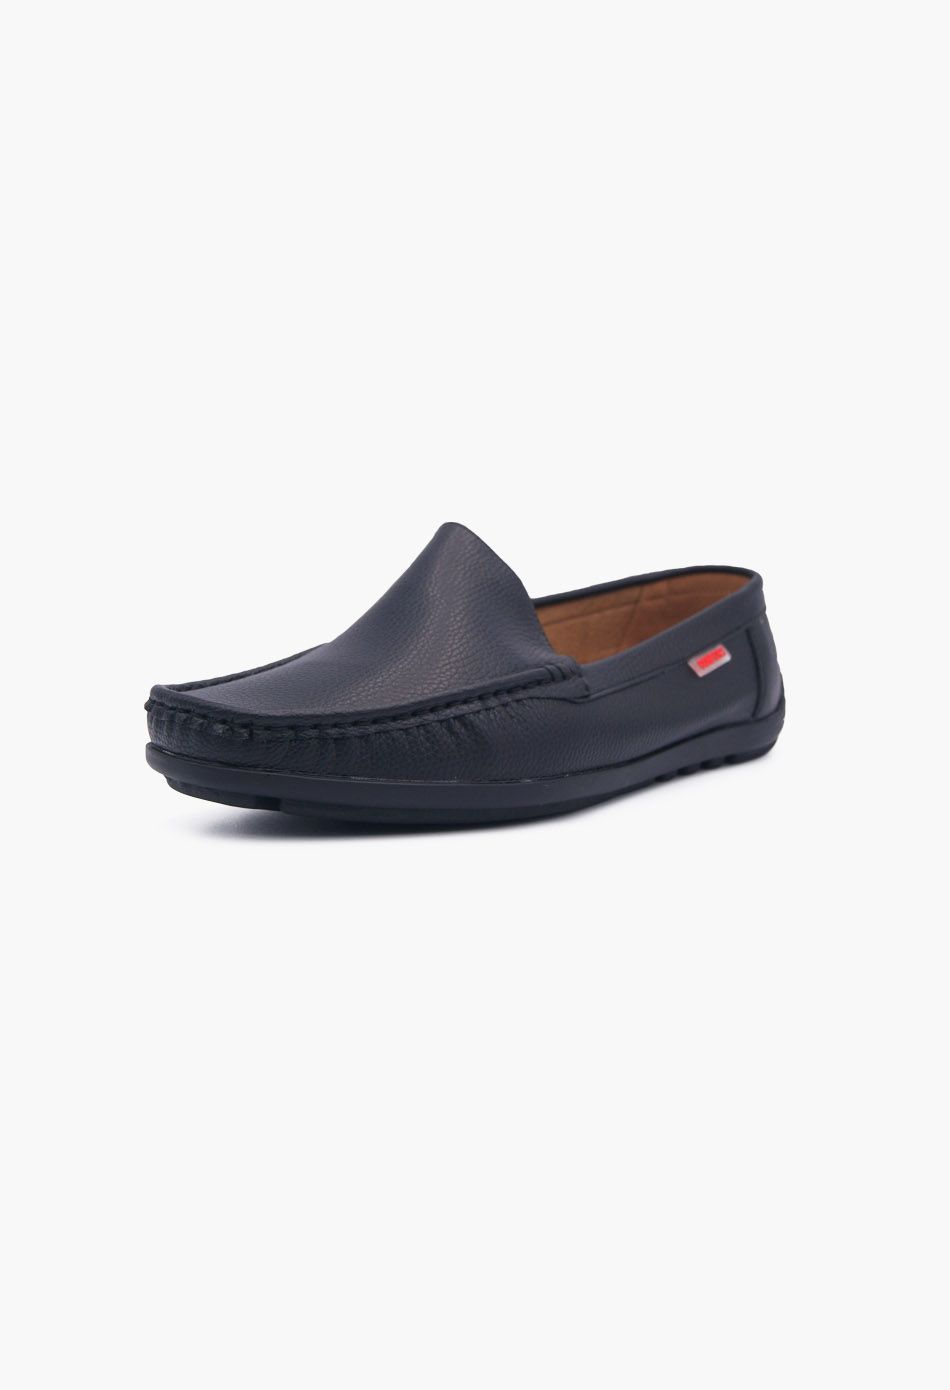 Ανδρικά Boat Shoes σε Μαύρο Χρώμα / 2022B-black OXFORDS & CASUAL joya.gr